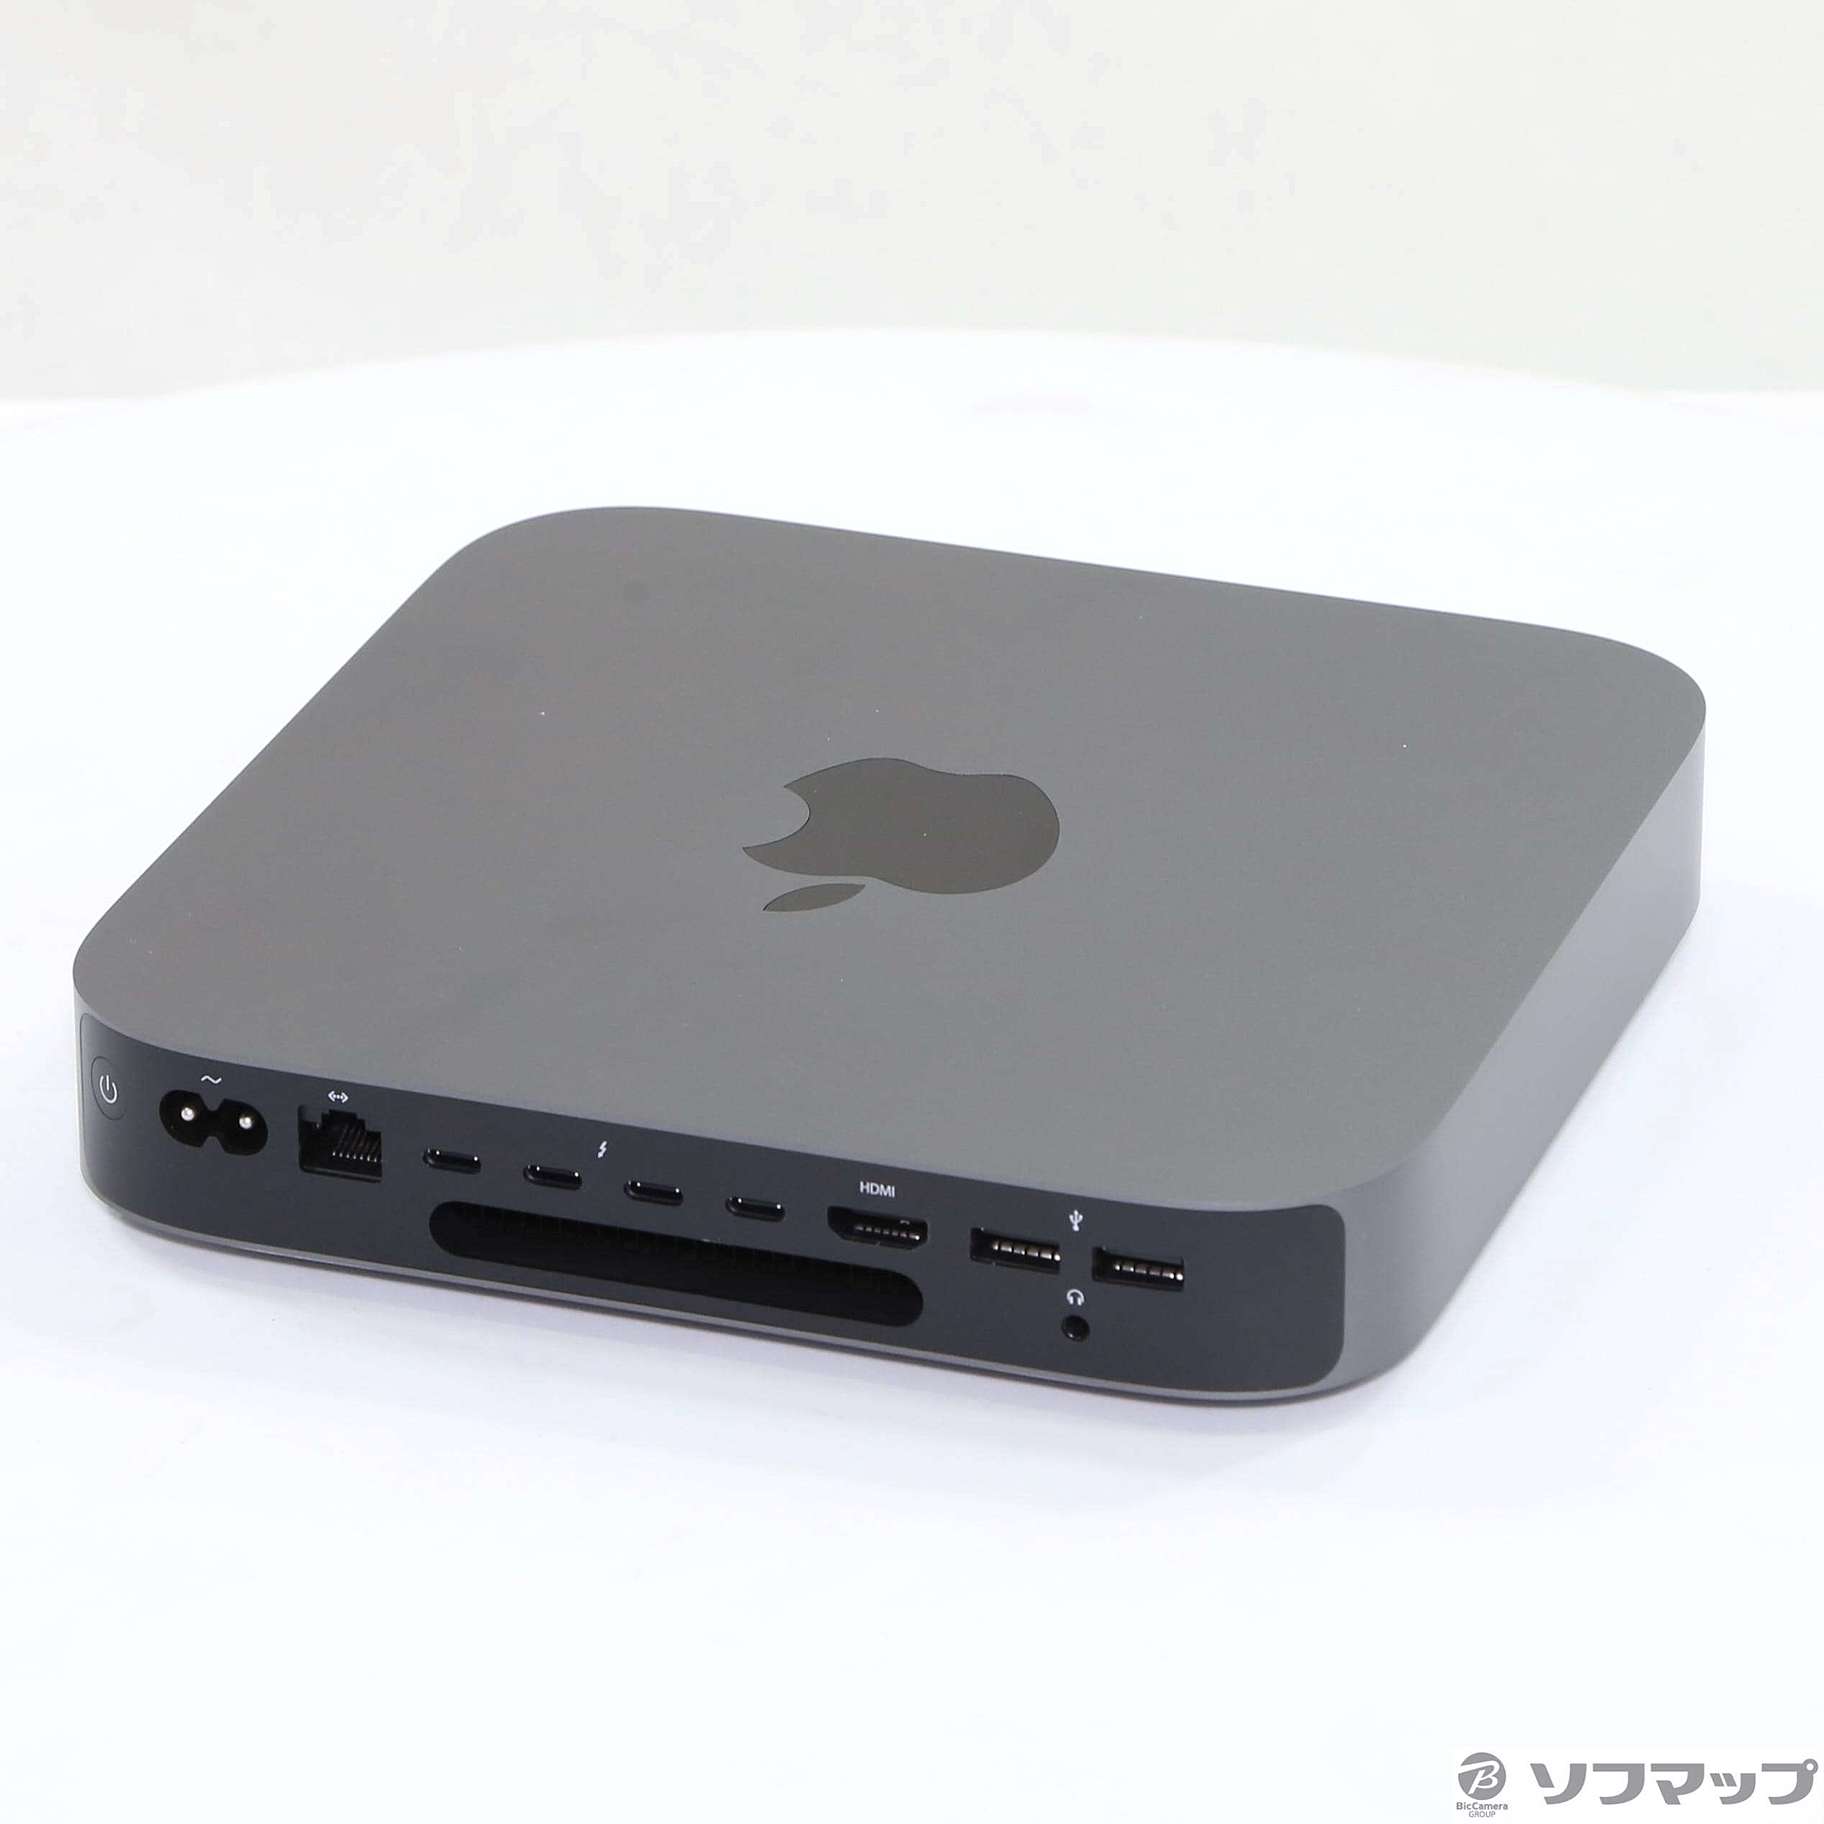 AppleAPPLE Mac mini MAC MINI MRTR2J/A